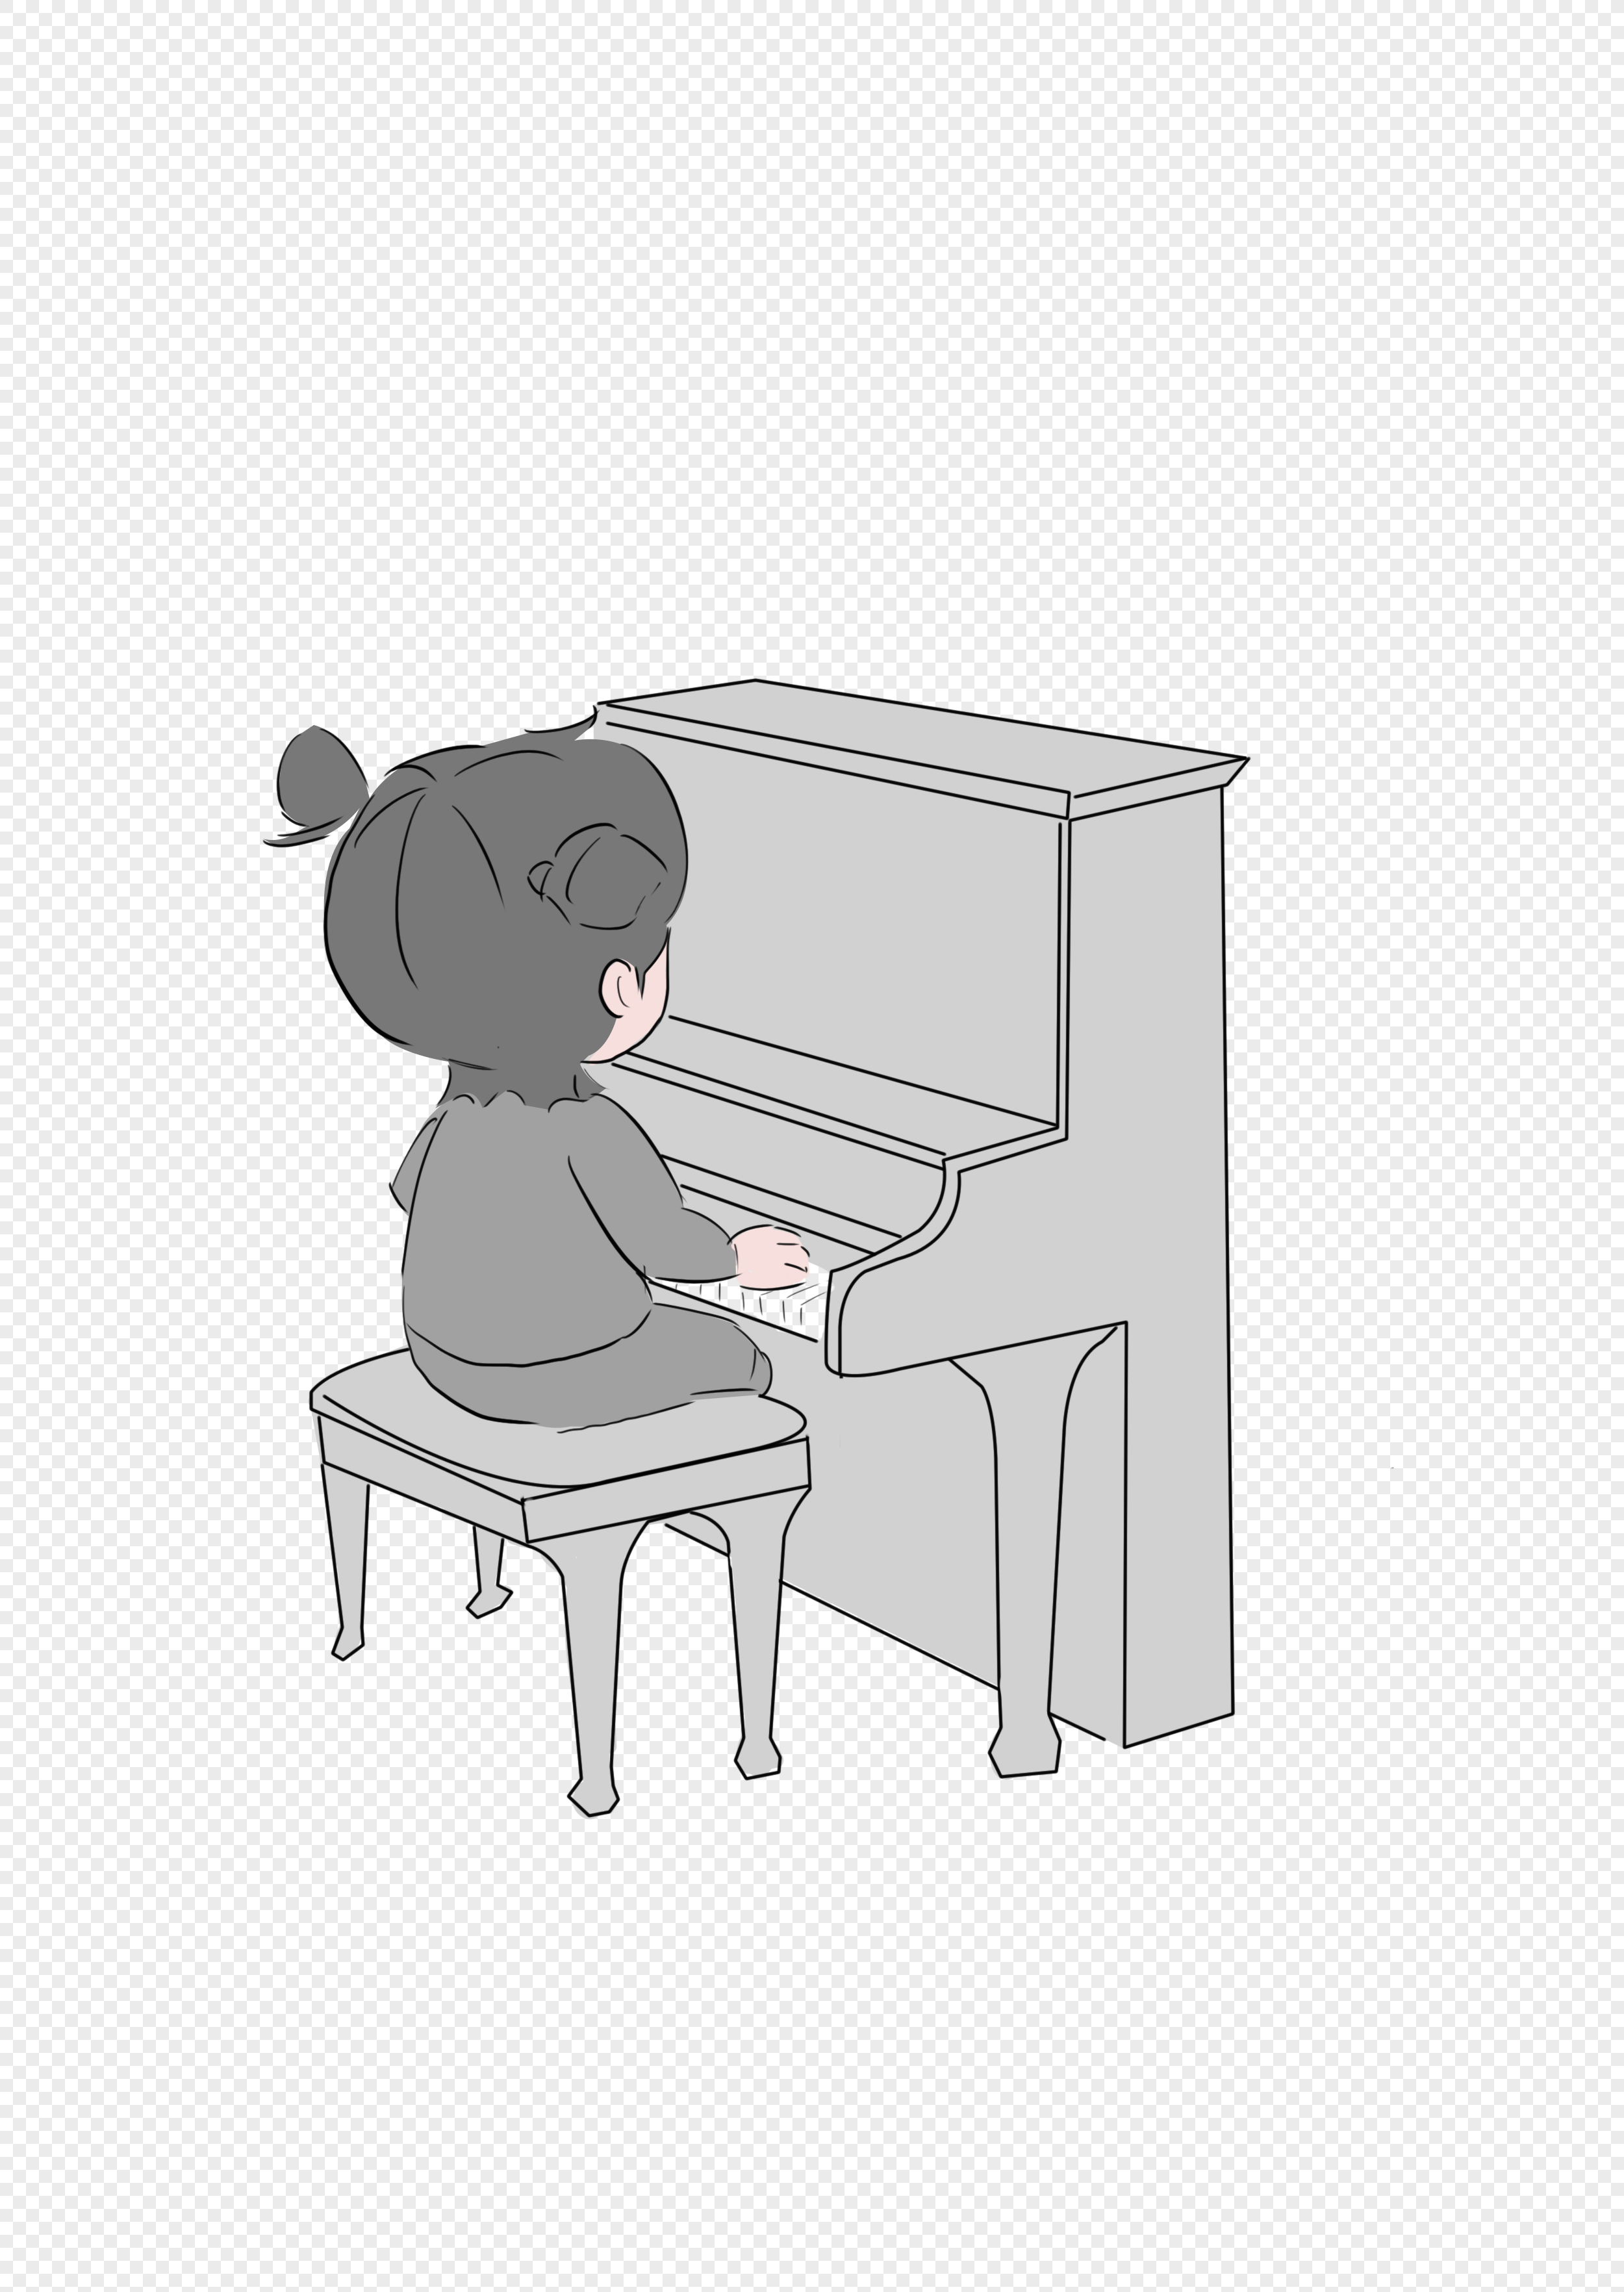 Изображение человека играющего на пианино для детей